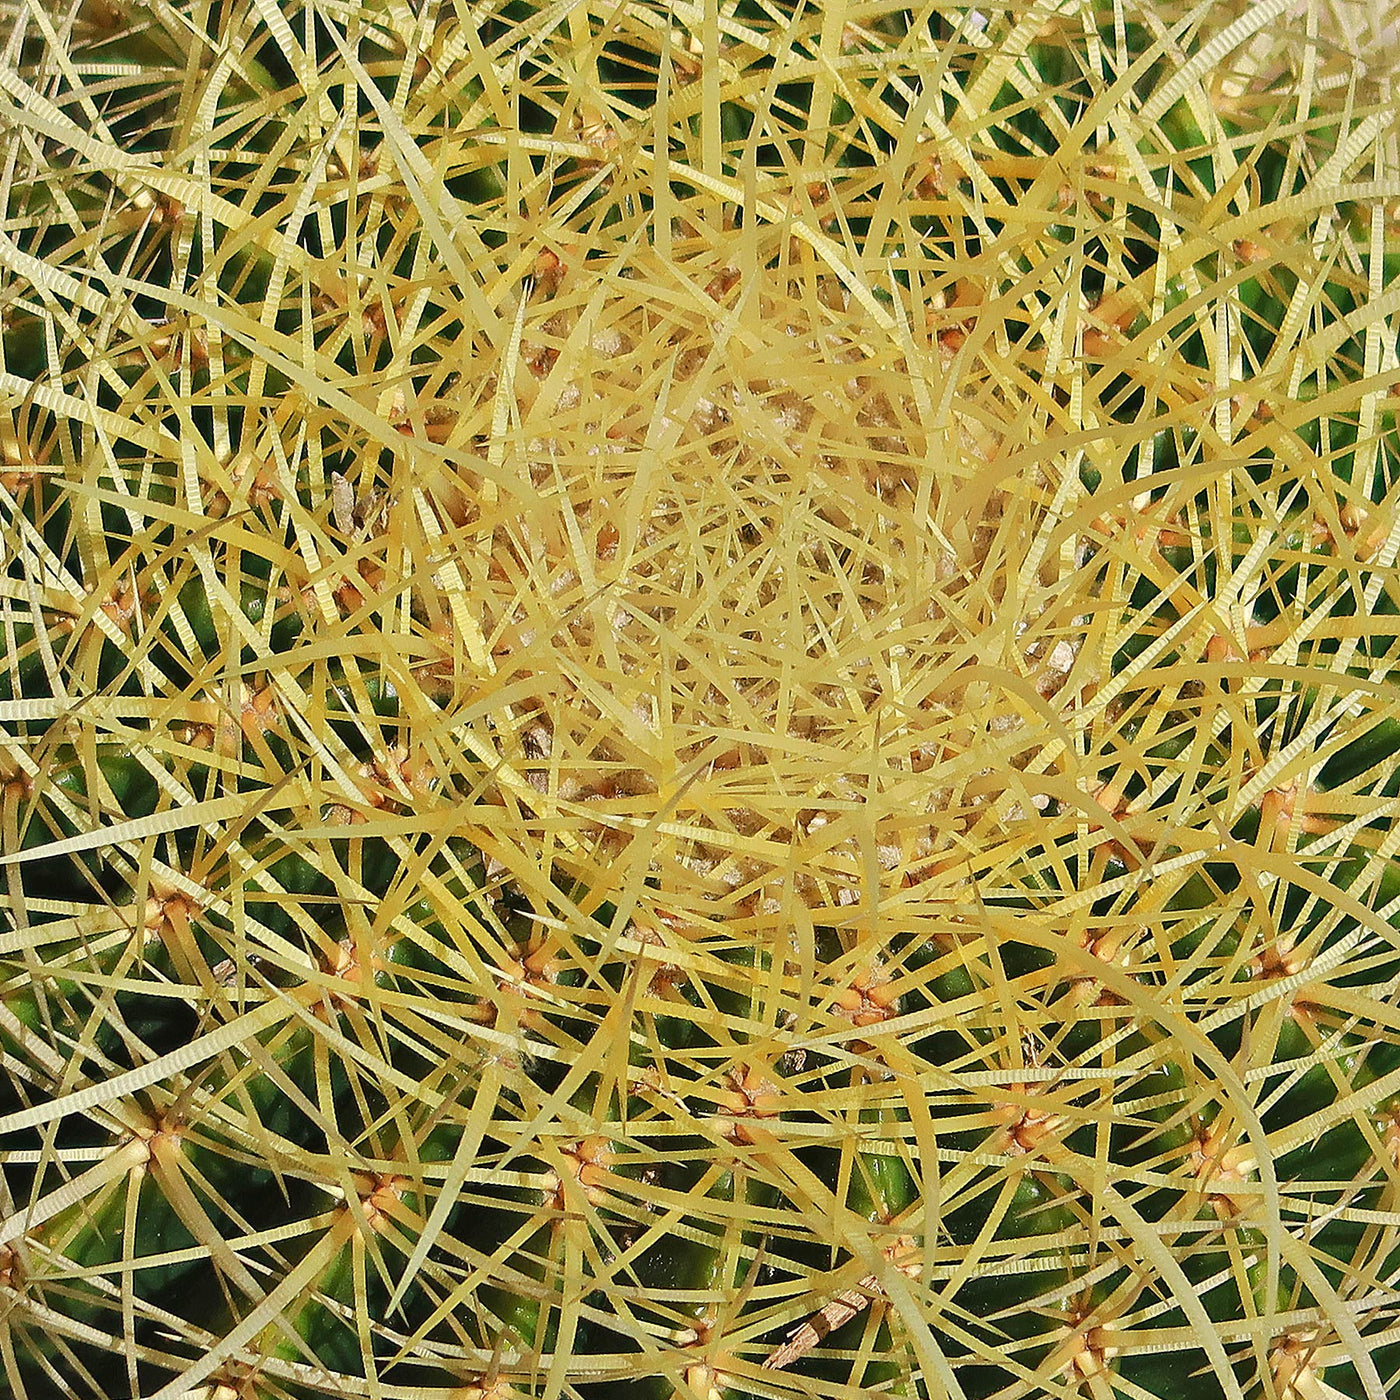 Golden Barrel Cactus - Echinocactus grusonii -23